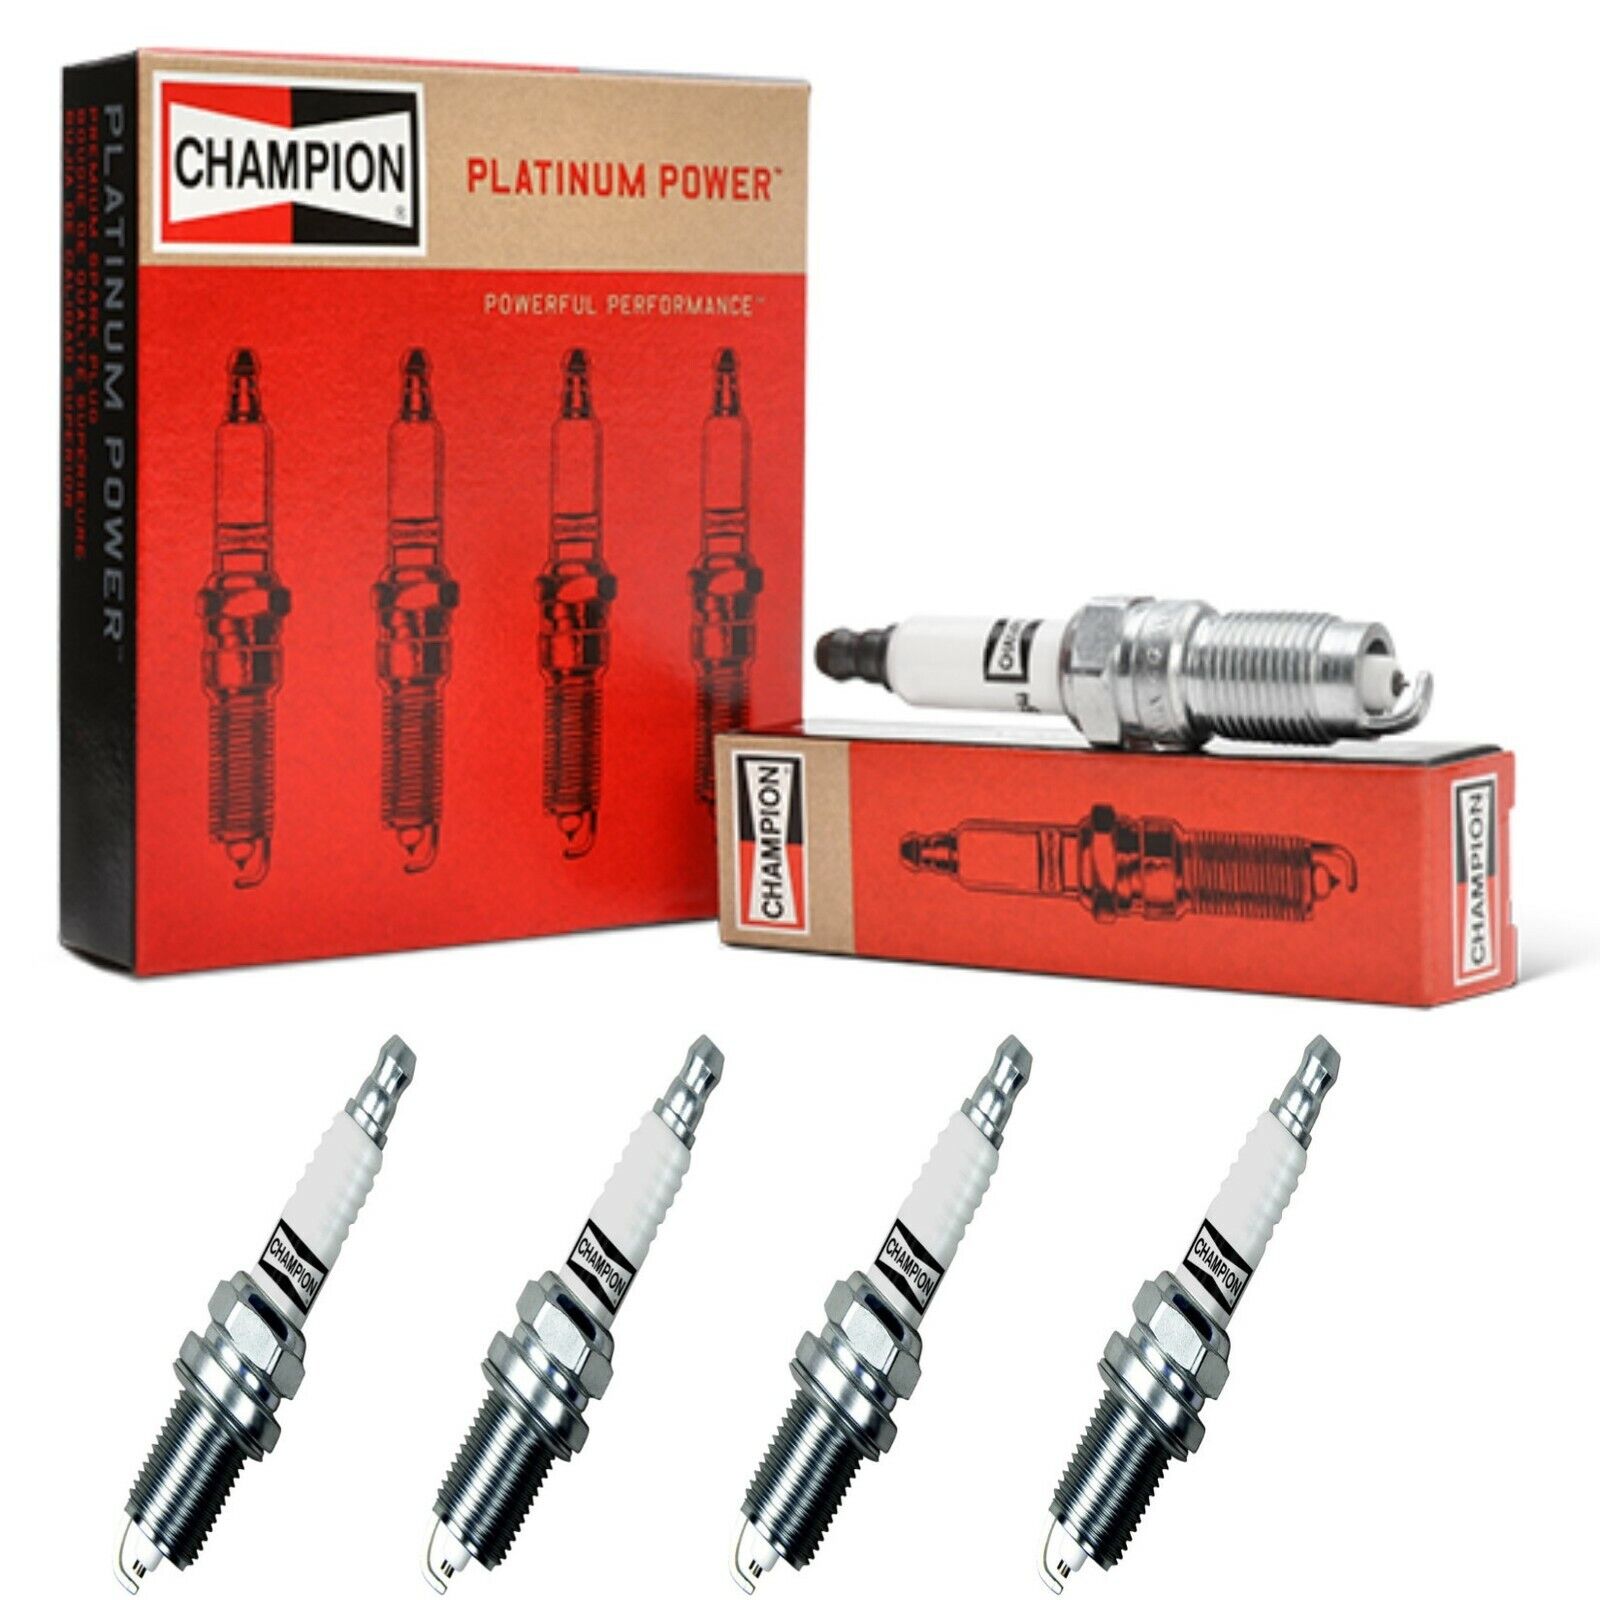 4 Champion Platinum Spark Plugs Set for MERCEDES-BENZ 190E 1984-1988 L4-2.3L